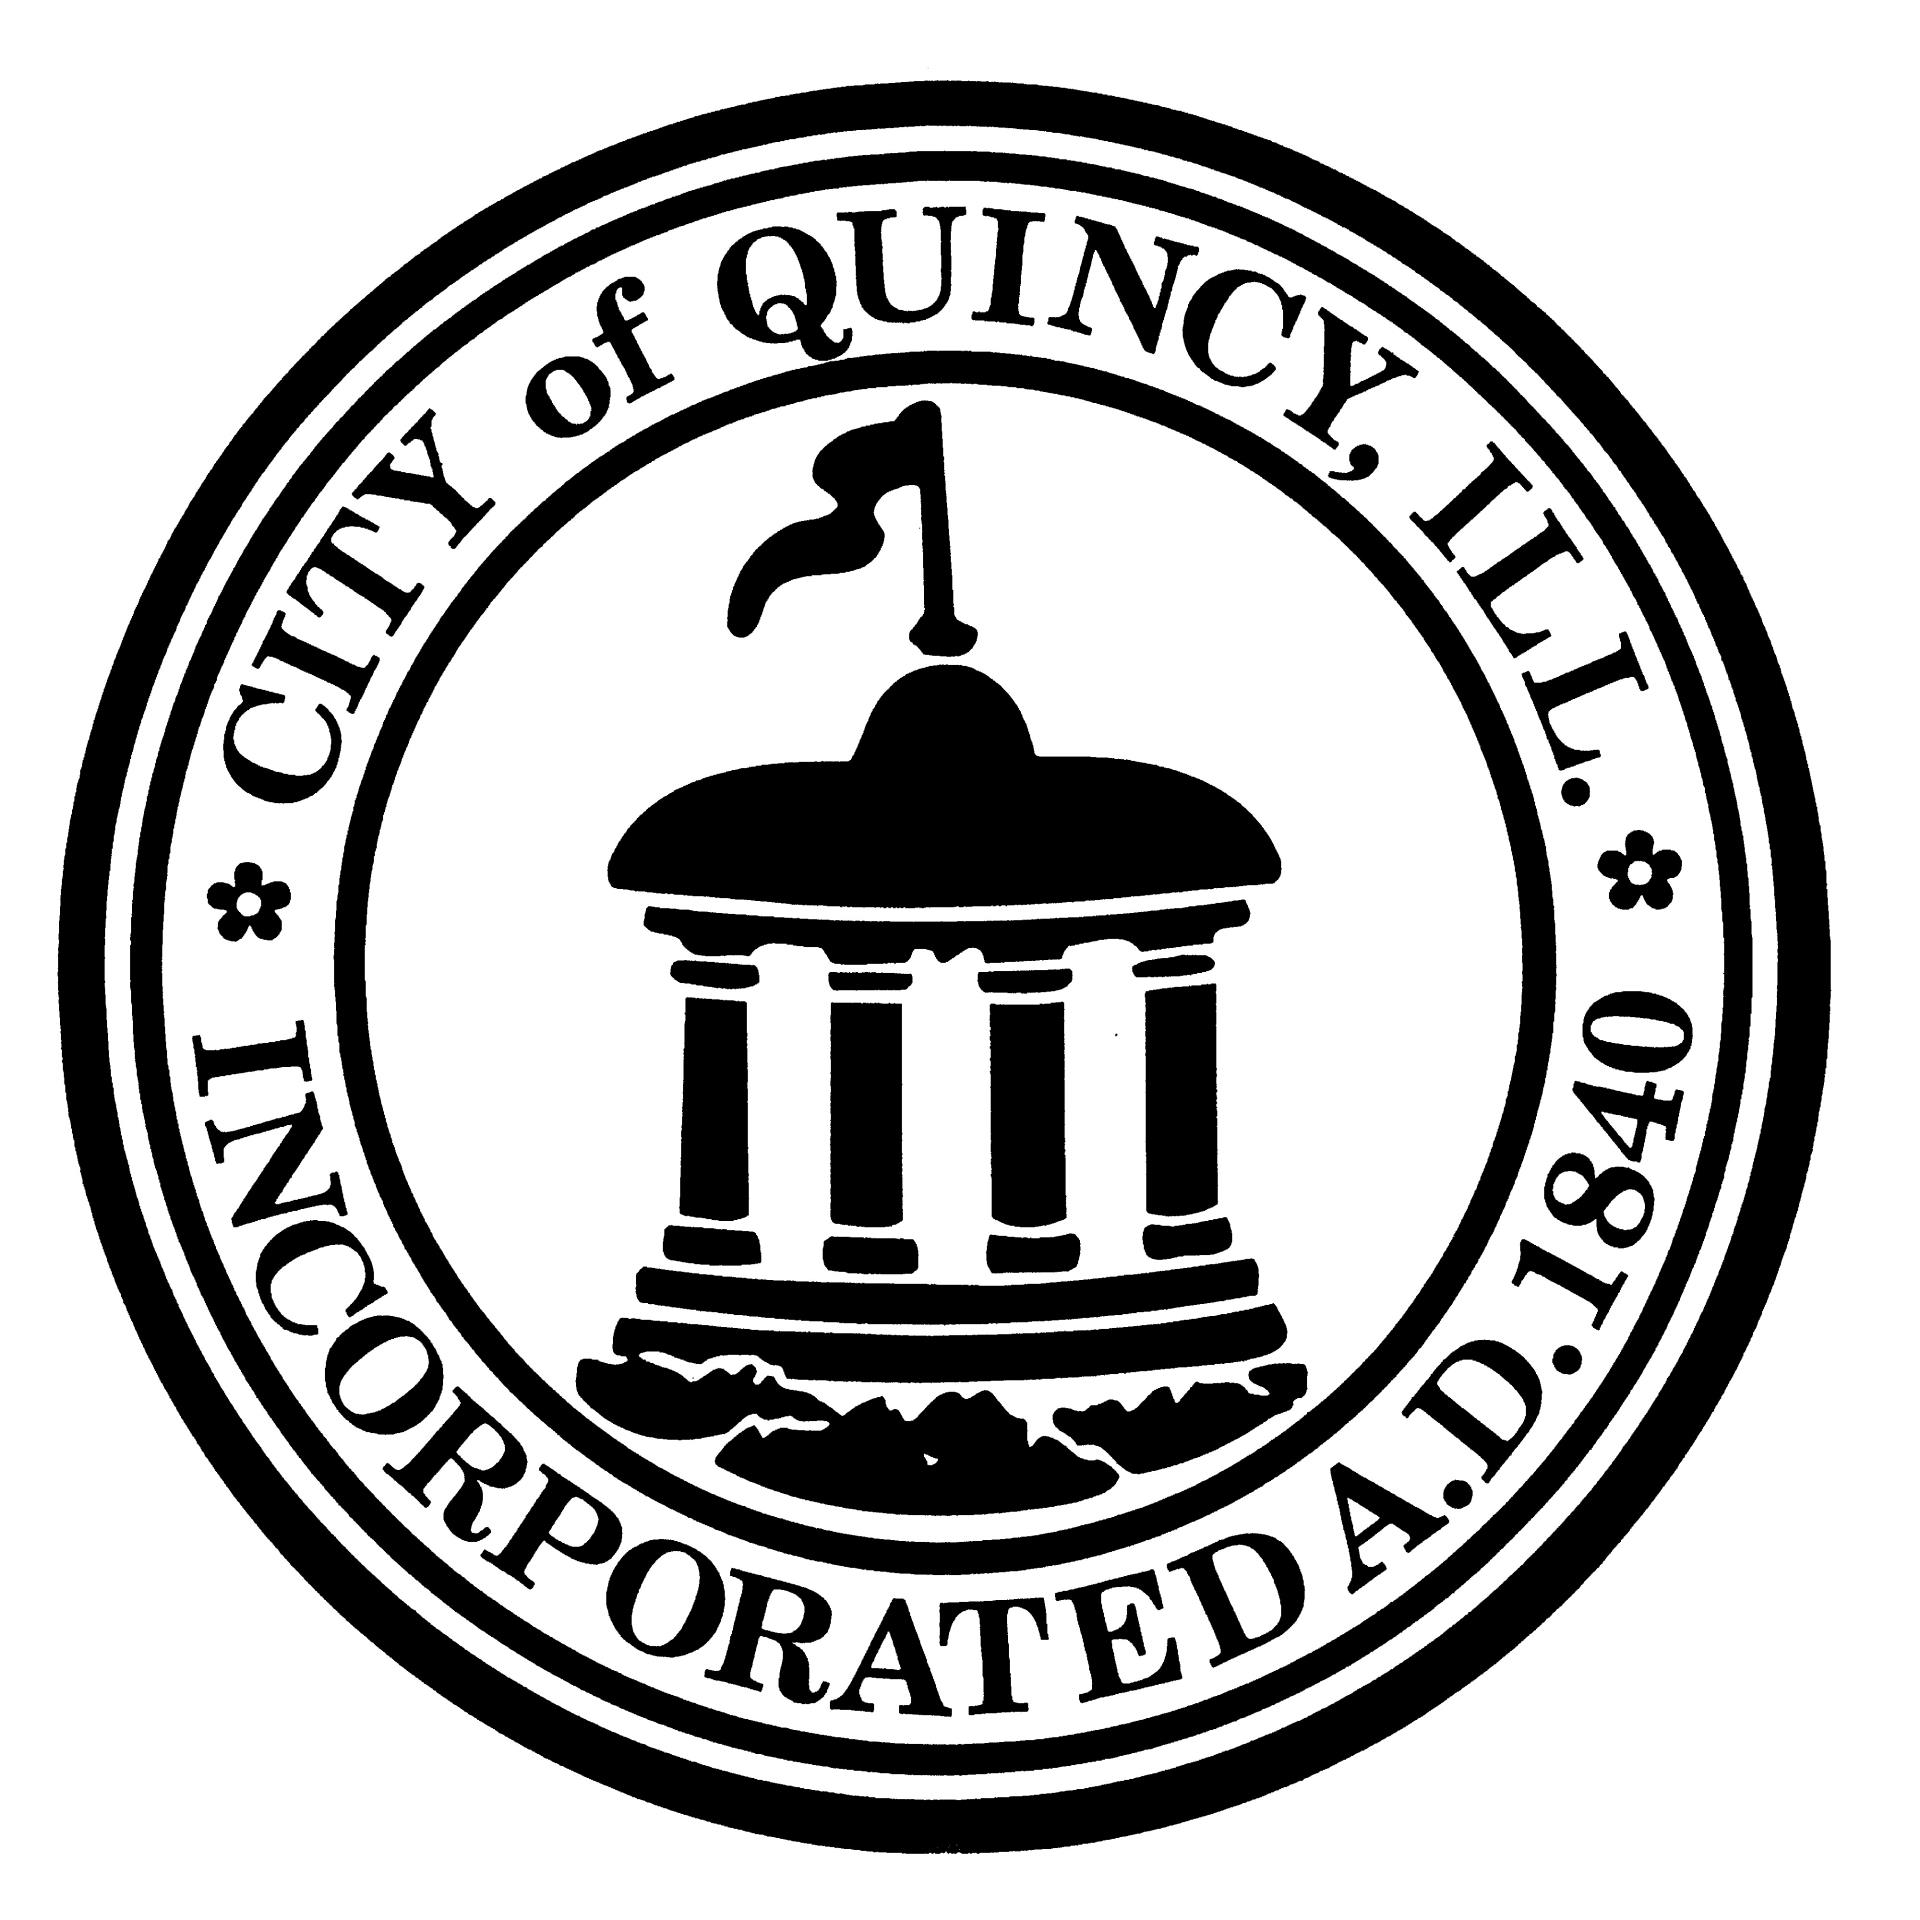 City of Quincy